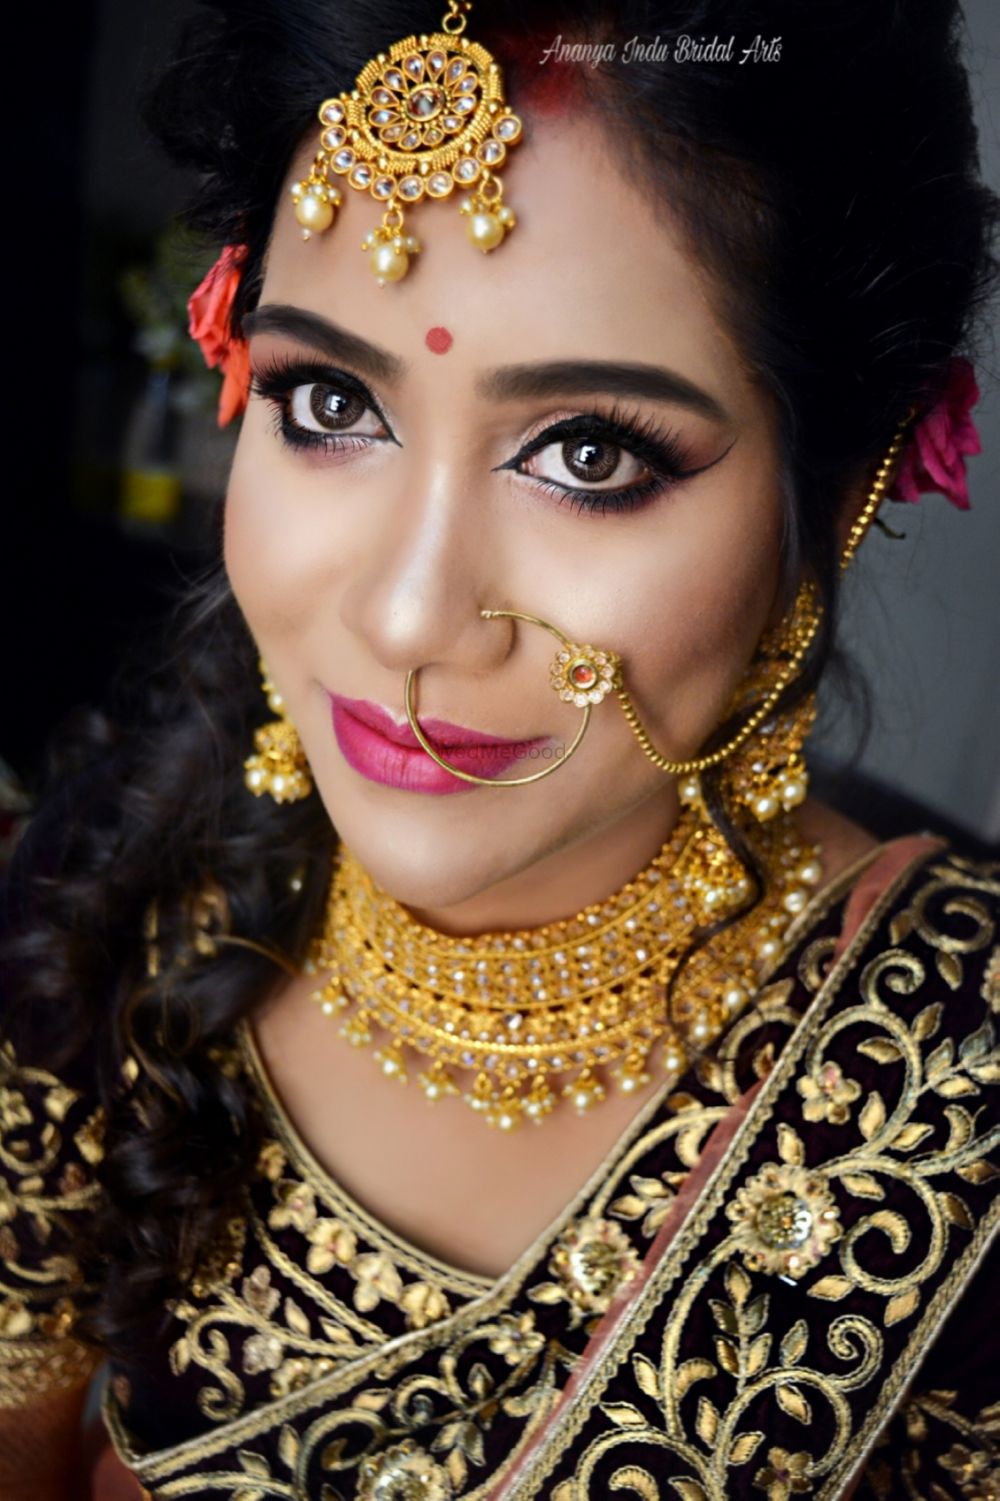 Photo From Contemporary Airbrush /HD Makeup - By Ananya Indu Bridal Arts